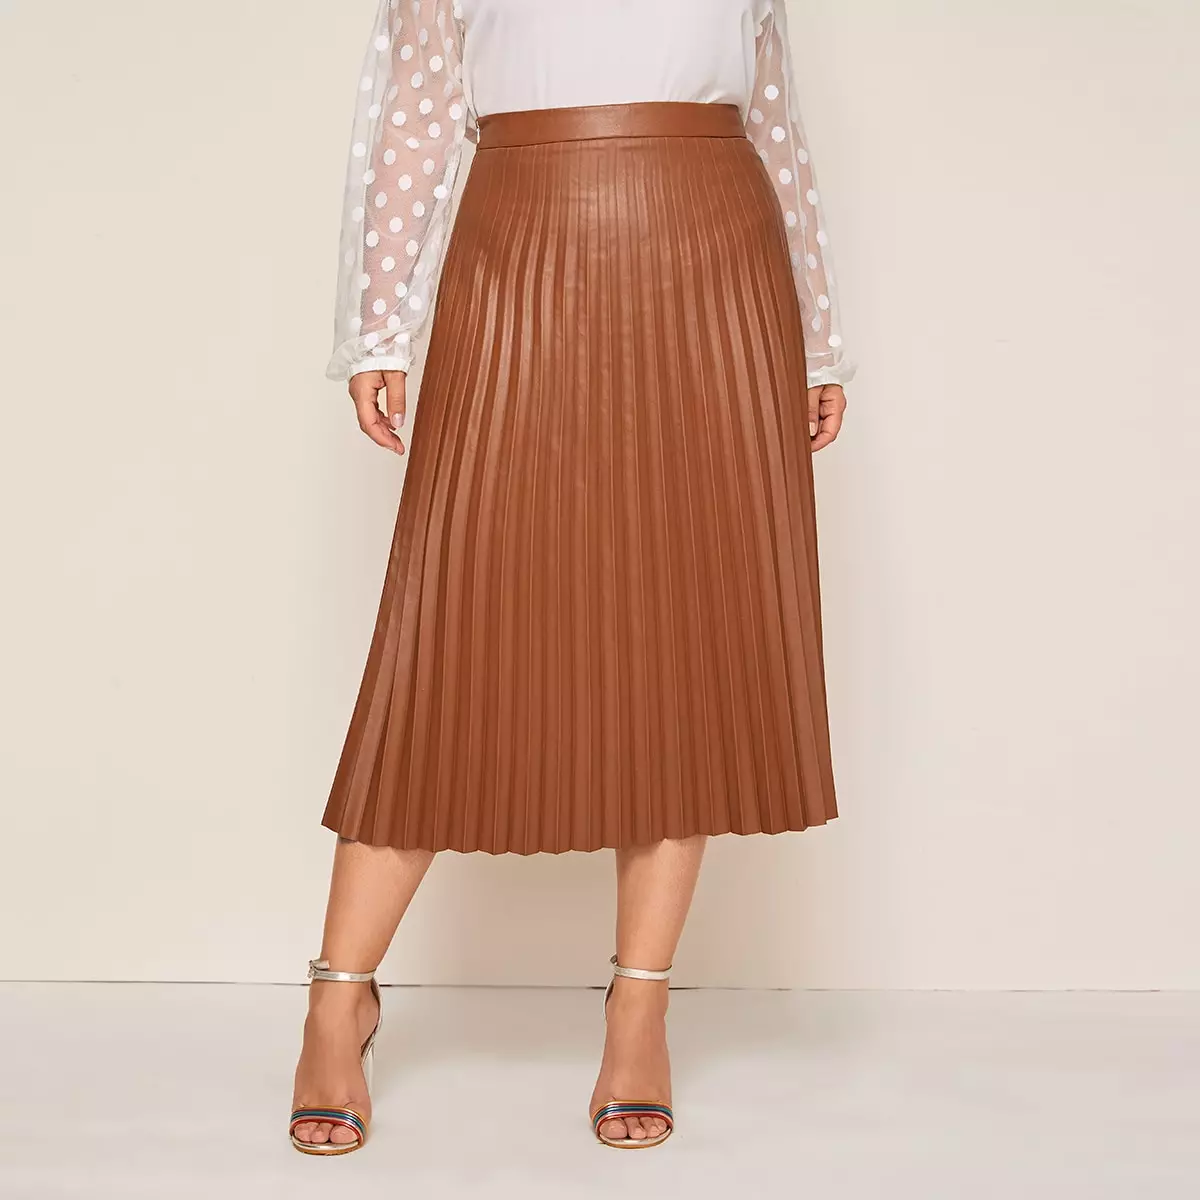 Faldas de cuero de la pisada: ¿Qué llevar la falda de pieza ecológica plisada? Imágenes con faldas de piel artificial negra y marrón. 800_27